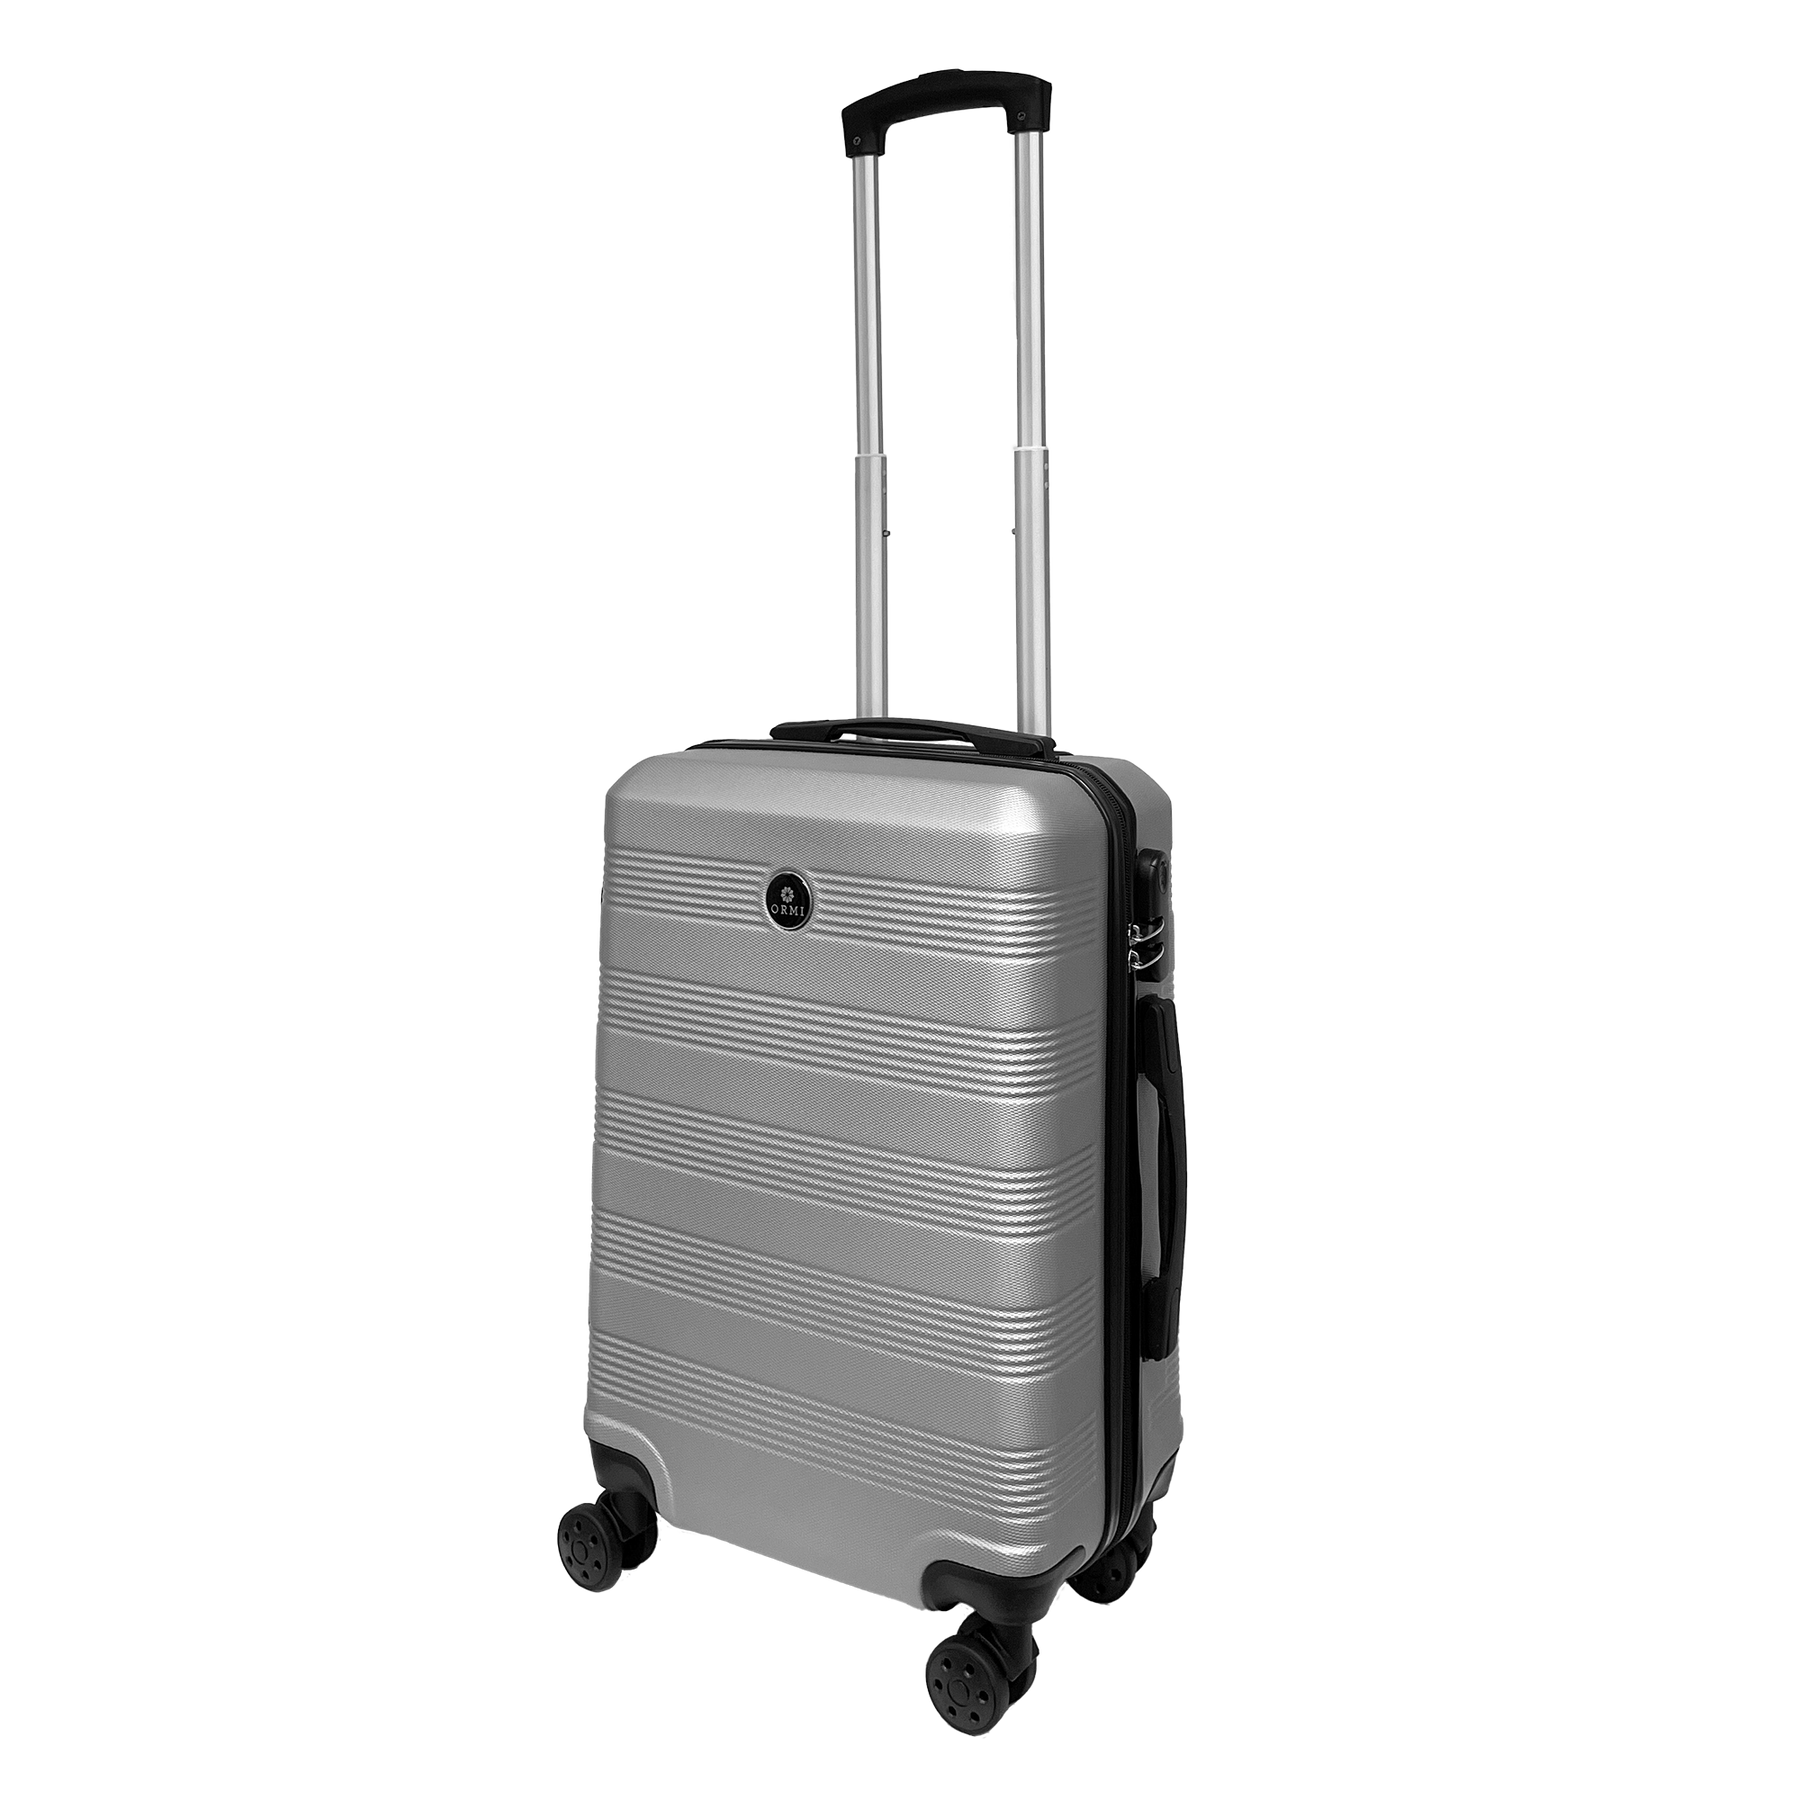 Grande bagagem dura bagagem rígida 55x37x22cm Ultra Light em ABS - Hold Bagage